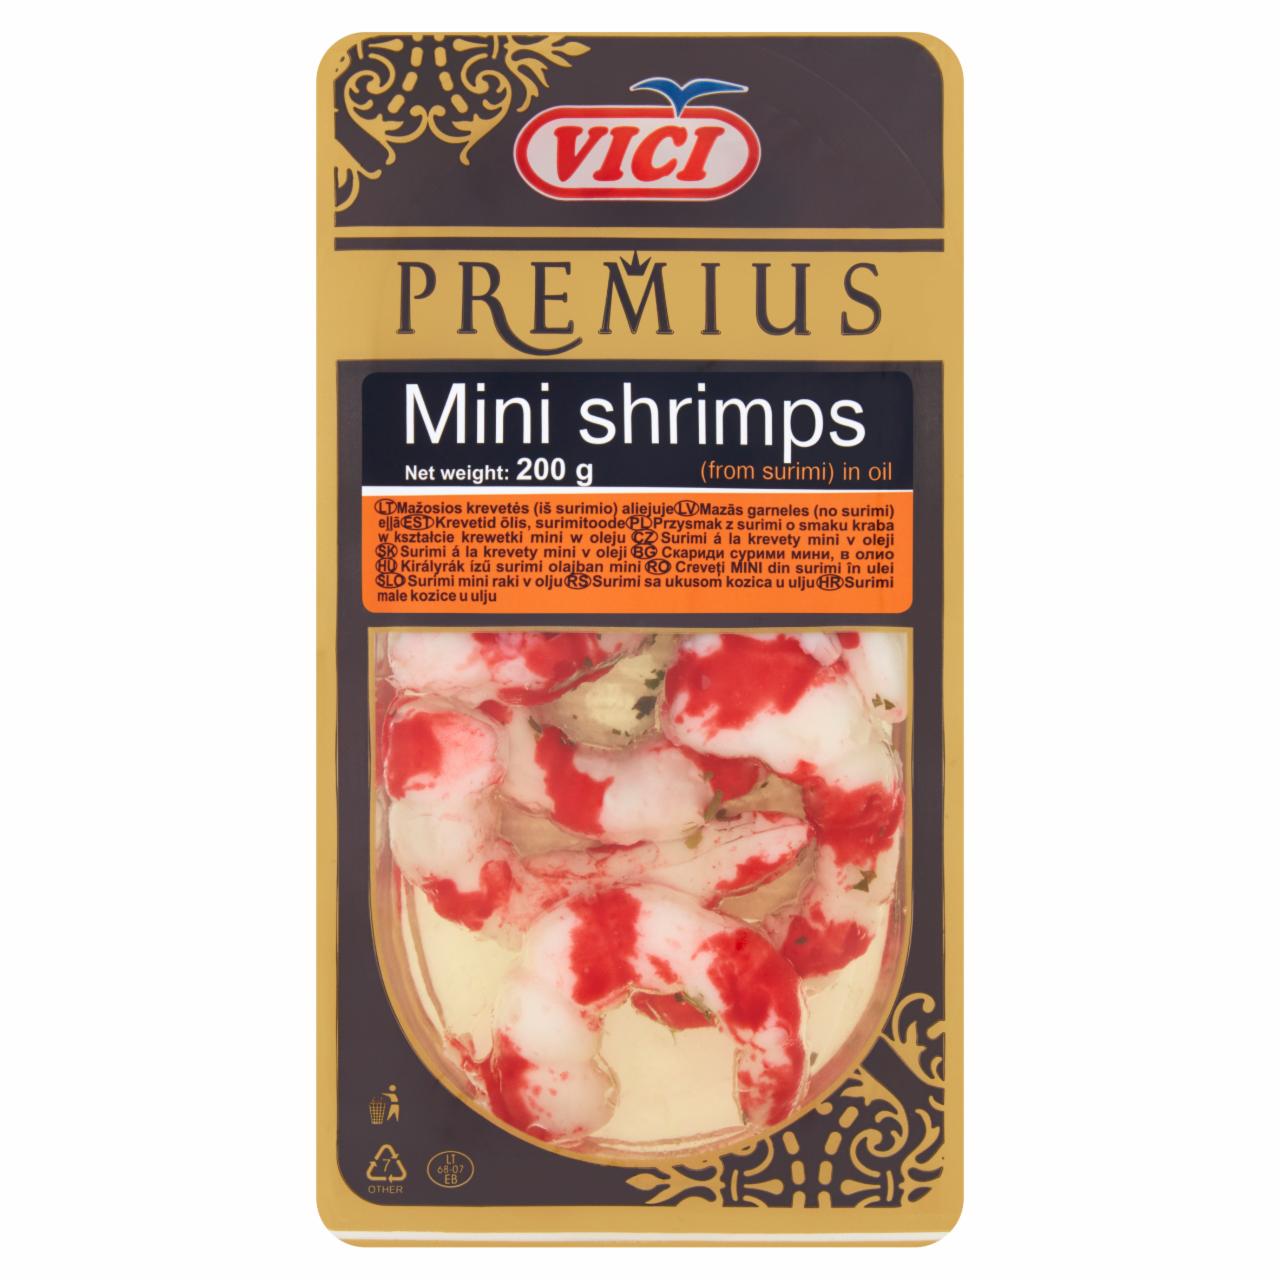 Zdjęcia - Vici Premius Przysmak z surimi o smaku kraba w kształcie krewetki mini w oleju 200 g